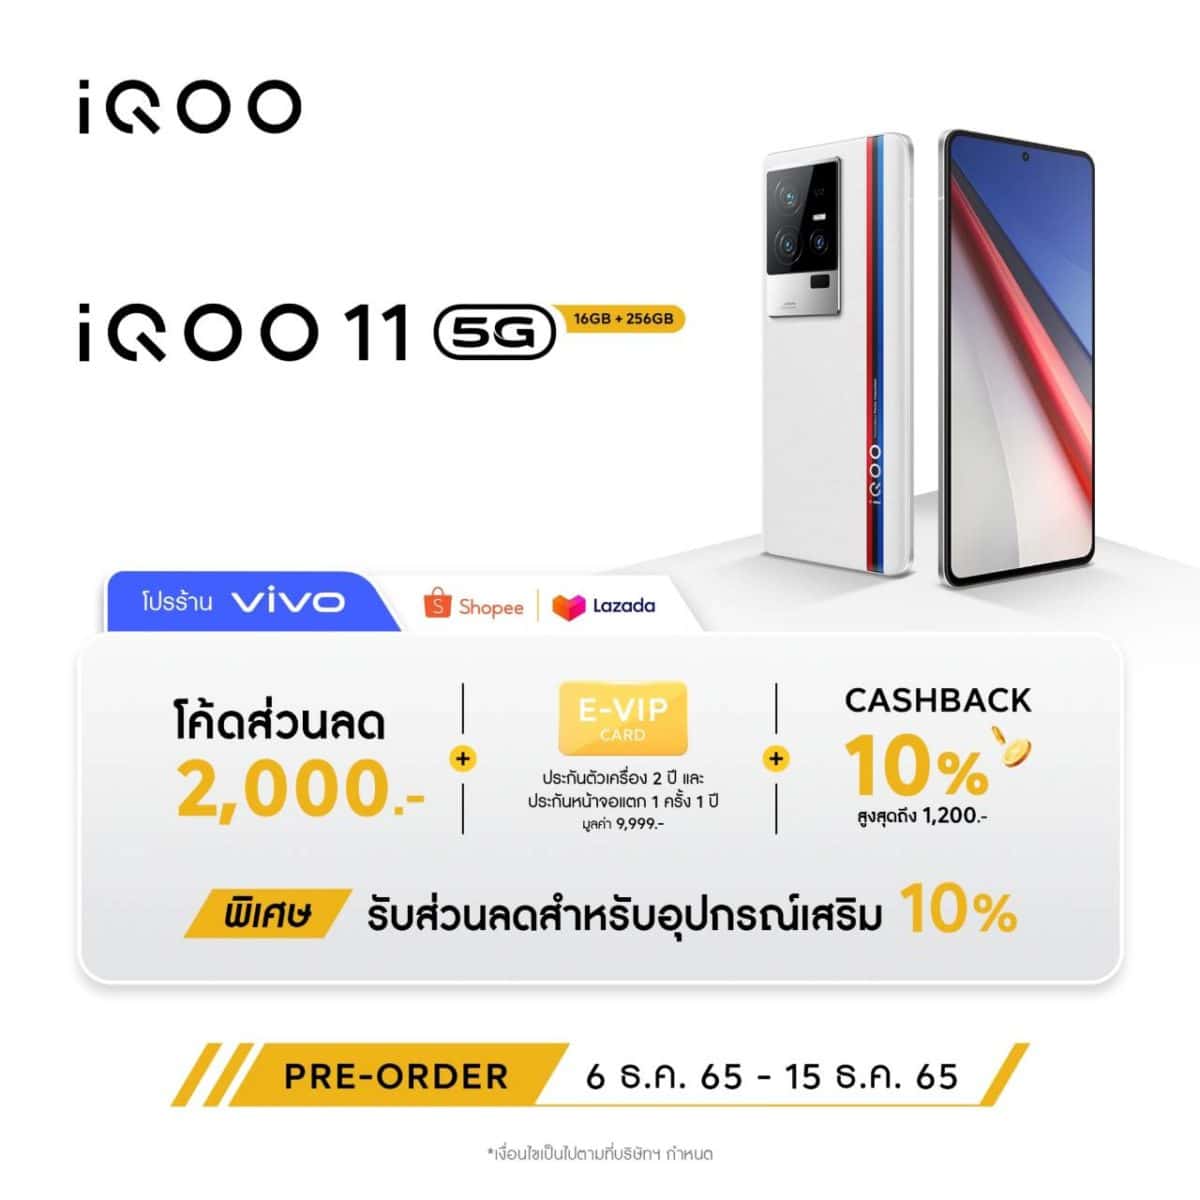 iQOO 11 5G Promotion